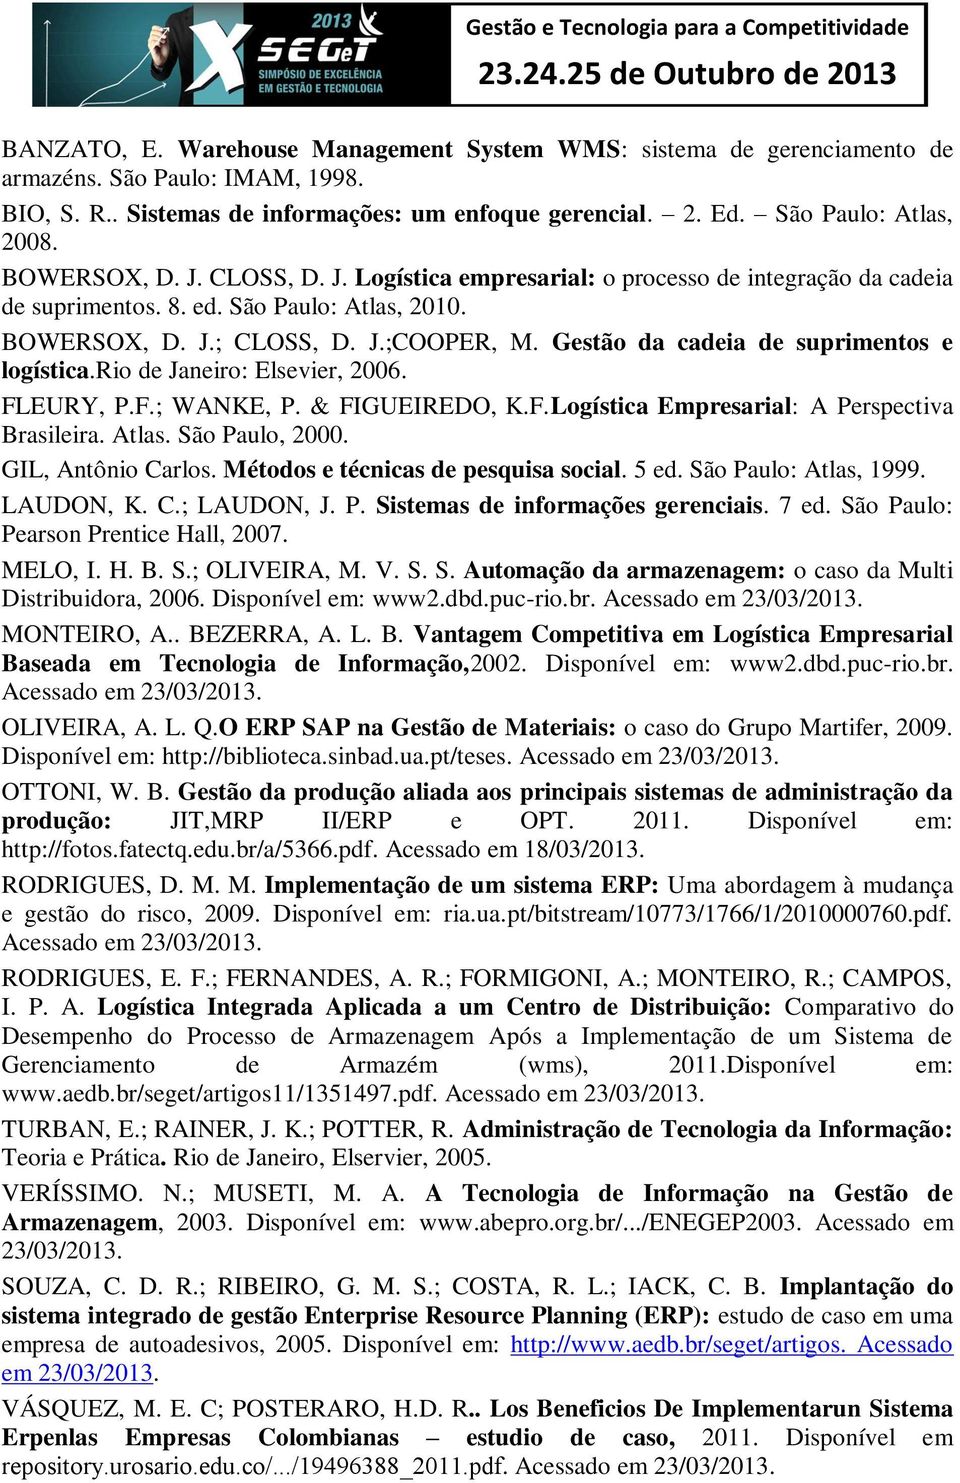 São Paulo: Atlas, 2010. BOWERSOX, D. J.; CLOSS, D. J.;COOPER, M. Gestão da cadeia de suprimentos e logística.rio de Janeiro: Elsevier, 2006. FLEURY, P.F.; WANKE, P. & FIGUEIREDO, K.F.Logística Empresarial: A Perspectiva Brasileira.